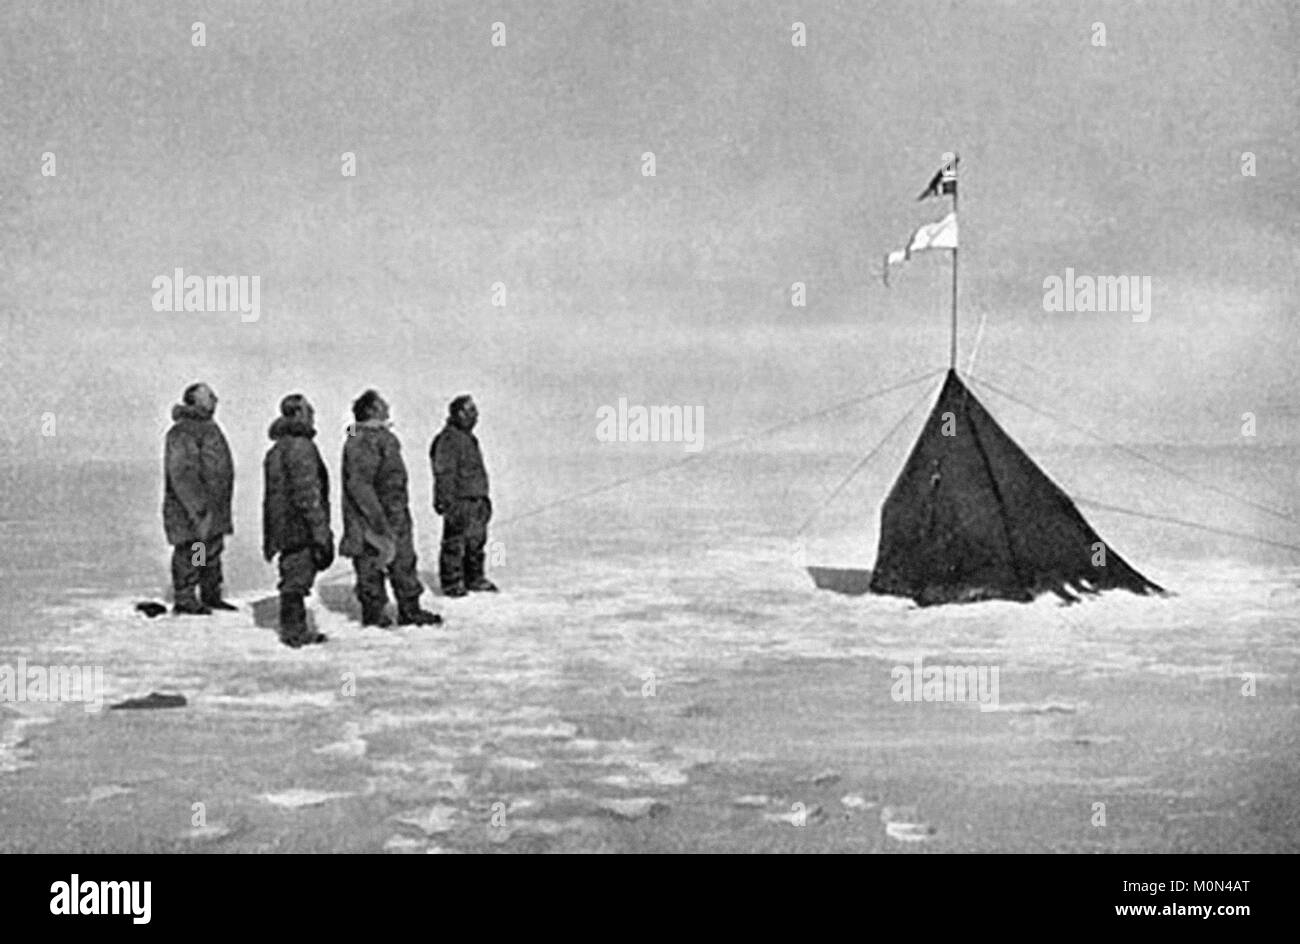 Roald Amundsen. I membri di Roald Amundsen's Polo Sud 1910-12 spedizione al Polo Sud nel dicembre 1911. Da sinistra a destra: Roald Amundsen, Helmer Hanssen, Sverre Hassel e Oscar Wisting. Foto Stock